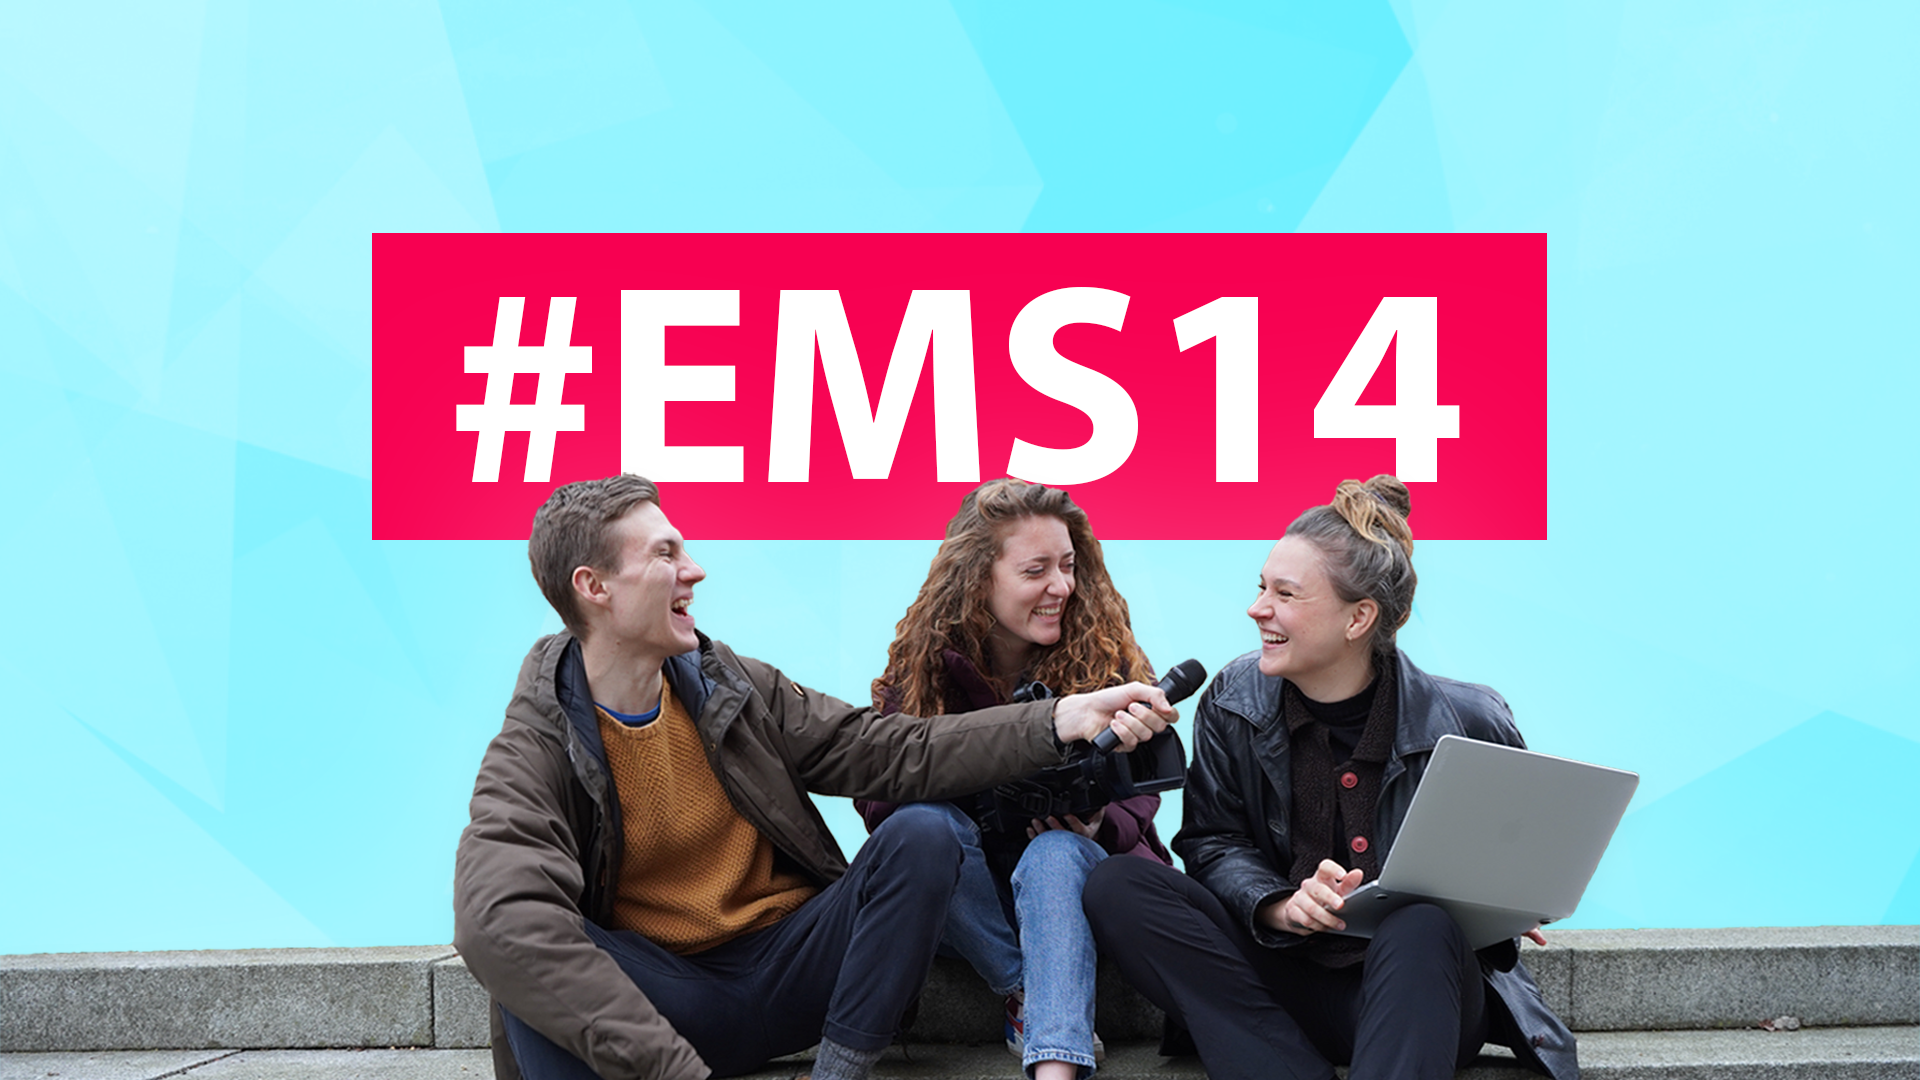 Das Team der ems: Bewerbungsstart für #ems14